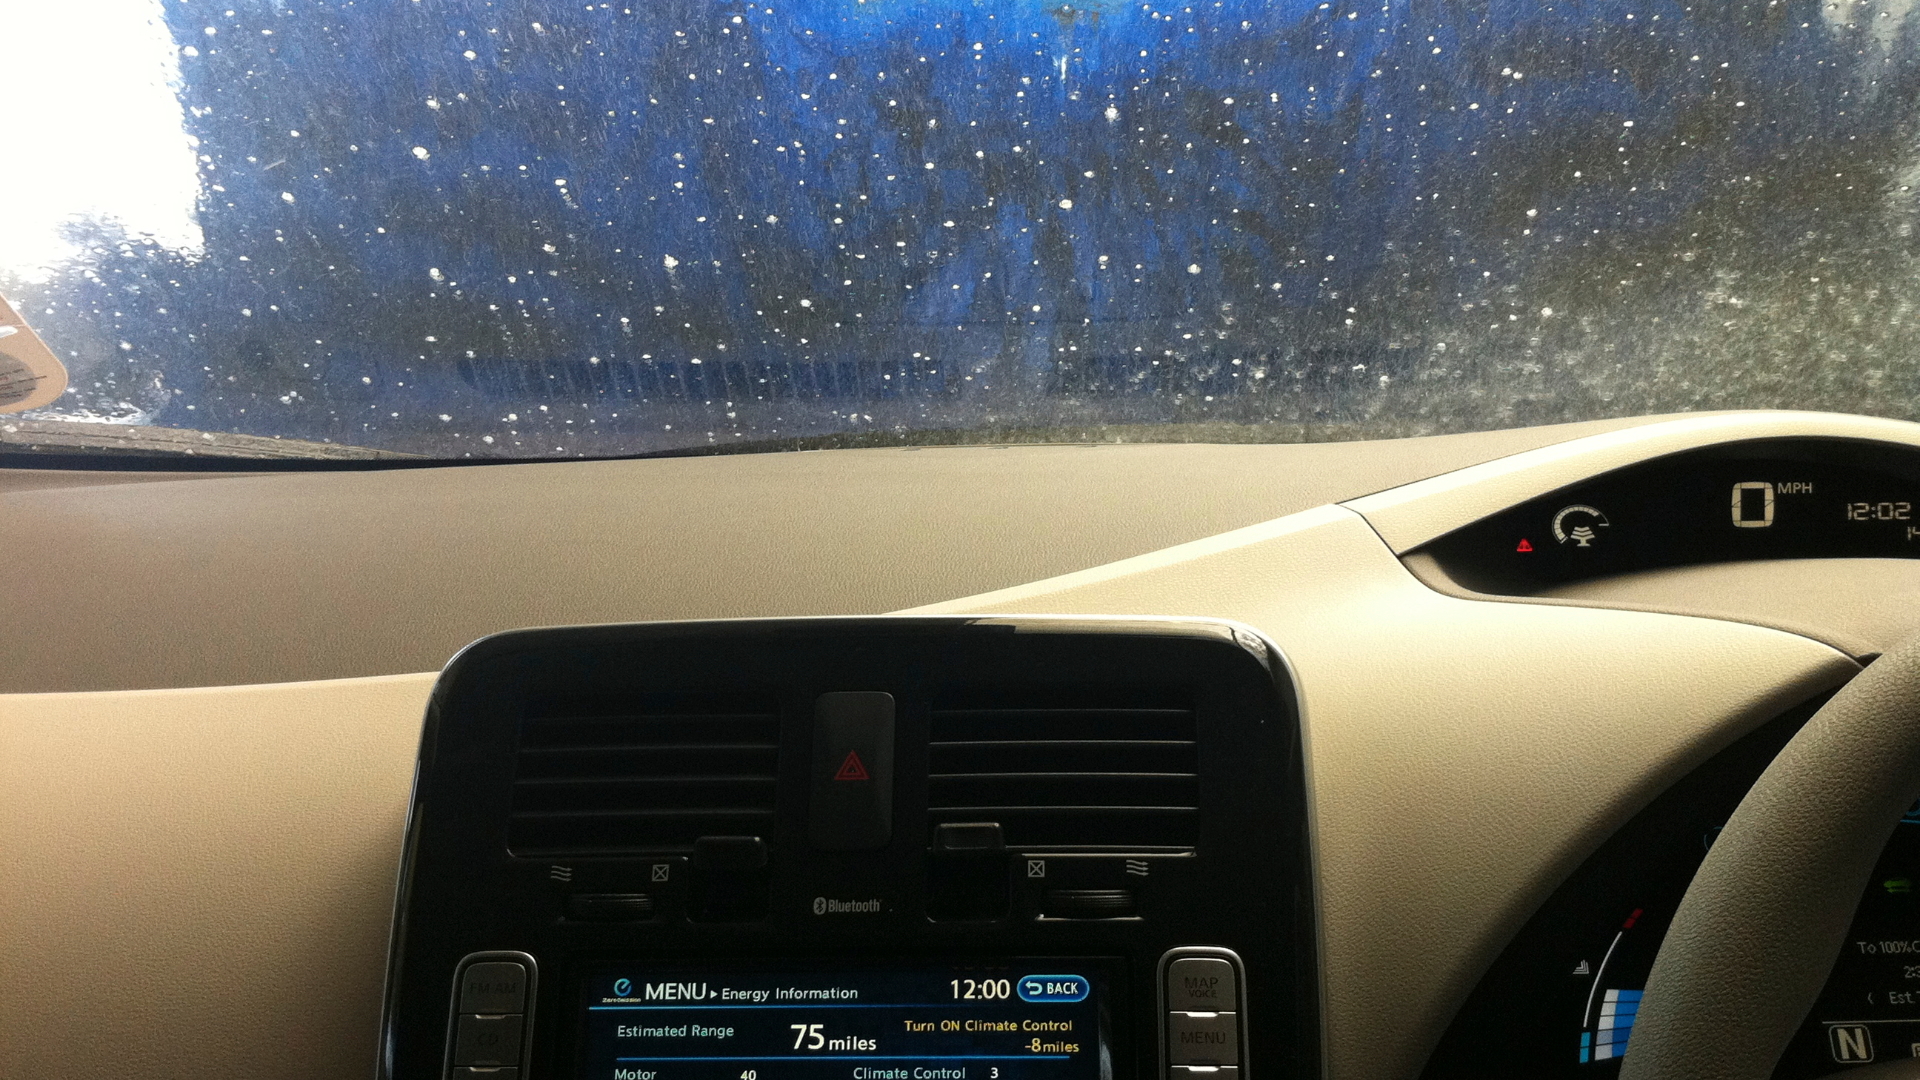 2011 Nissan Leaf in Car Wash